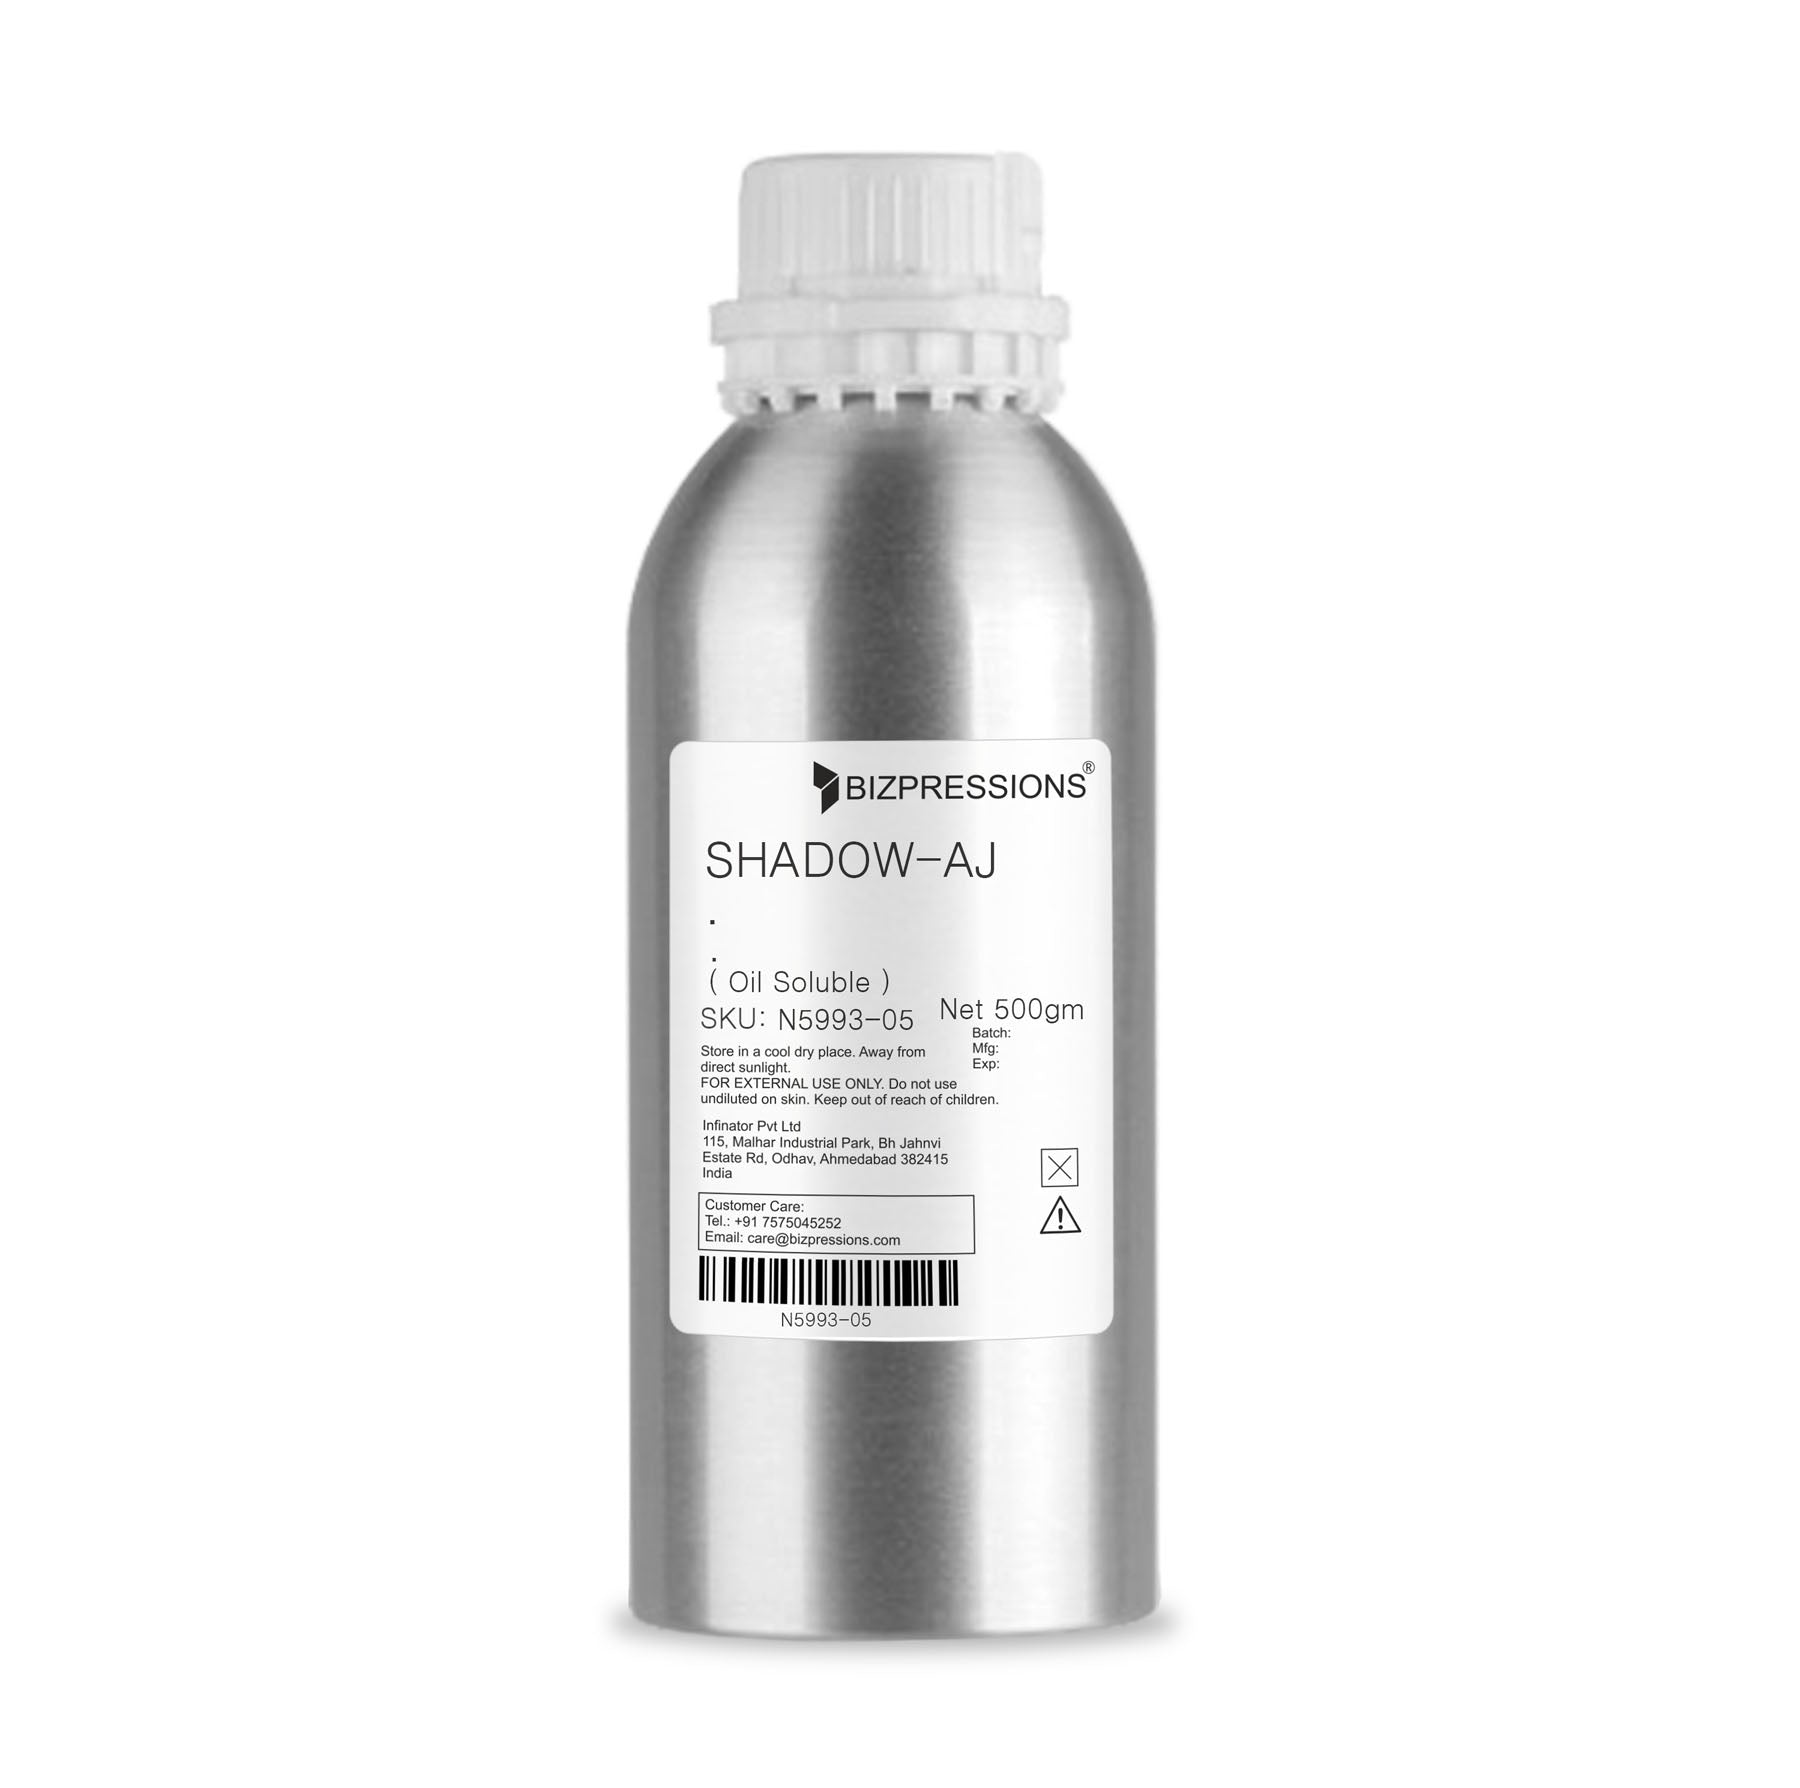 SHADOW-AJ - Fragrance ( Oil Soluble ) - 500 gm